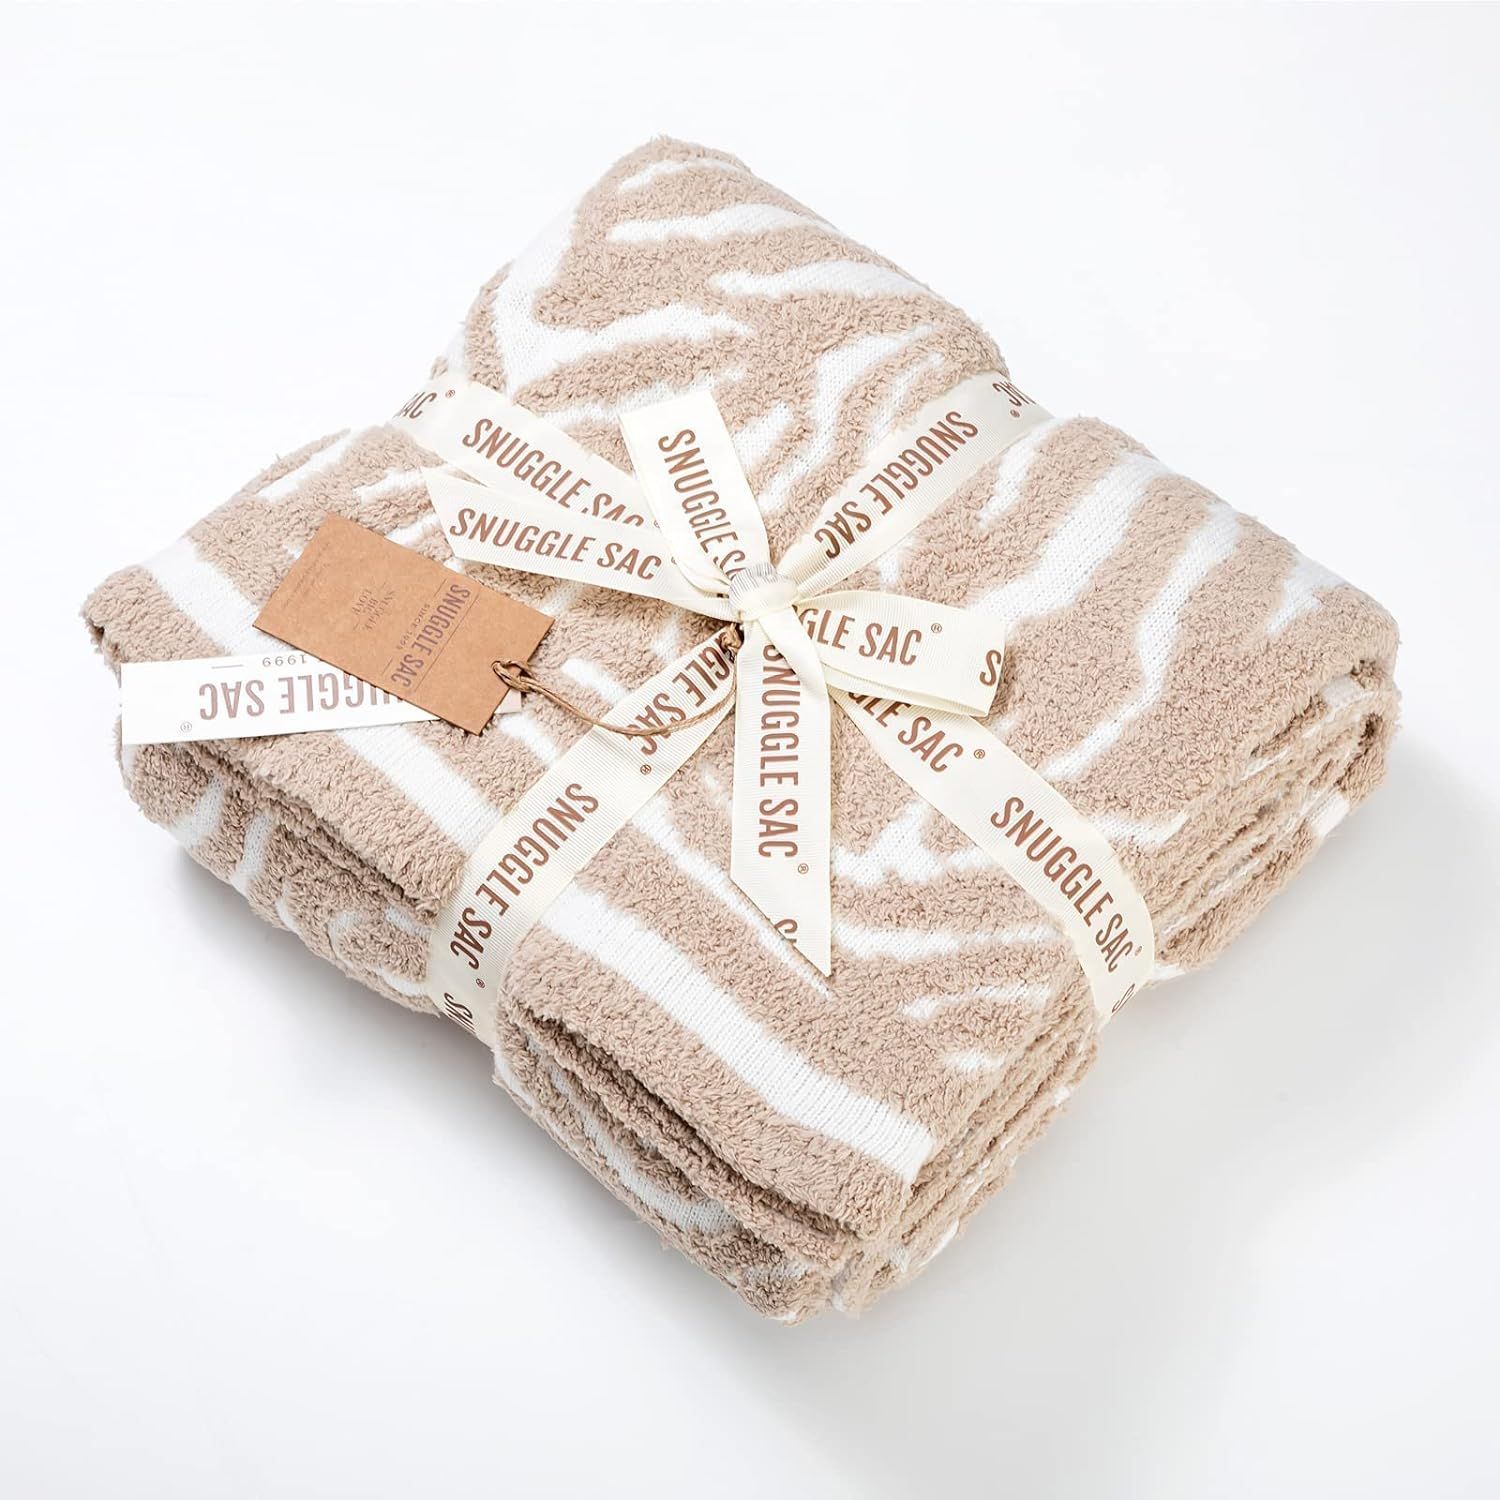 Snuggle Sac Beige Throw Blanket Reversible Zebra Print Knitted Textured Throw Blanket Farmhouse S... | Amazon (US)